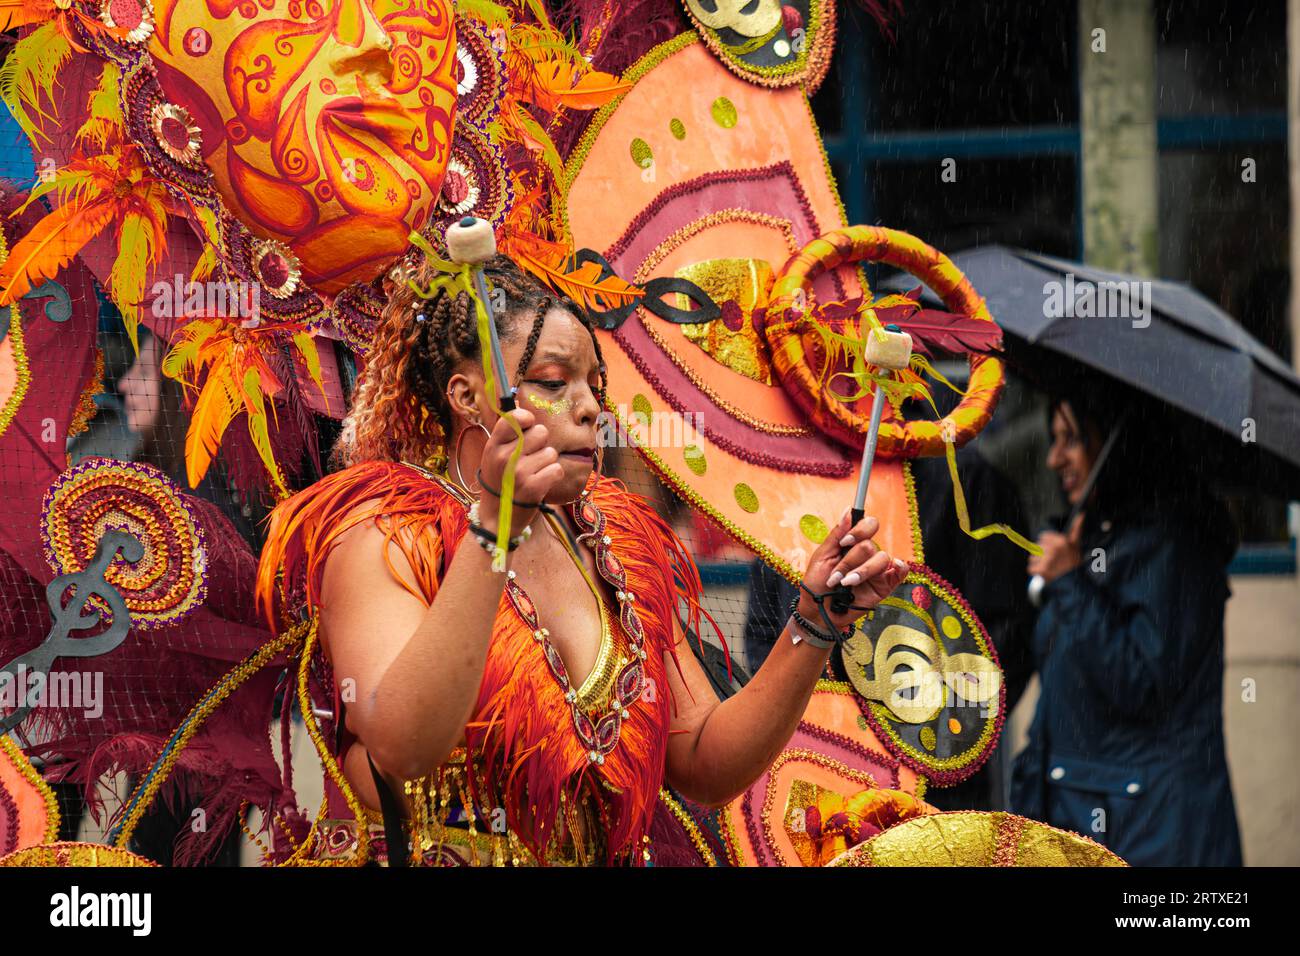 Karibische Karnevalsdame Tänzerin in farbenfrohem Kostüm Stockfoto